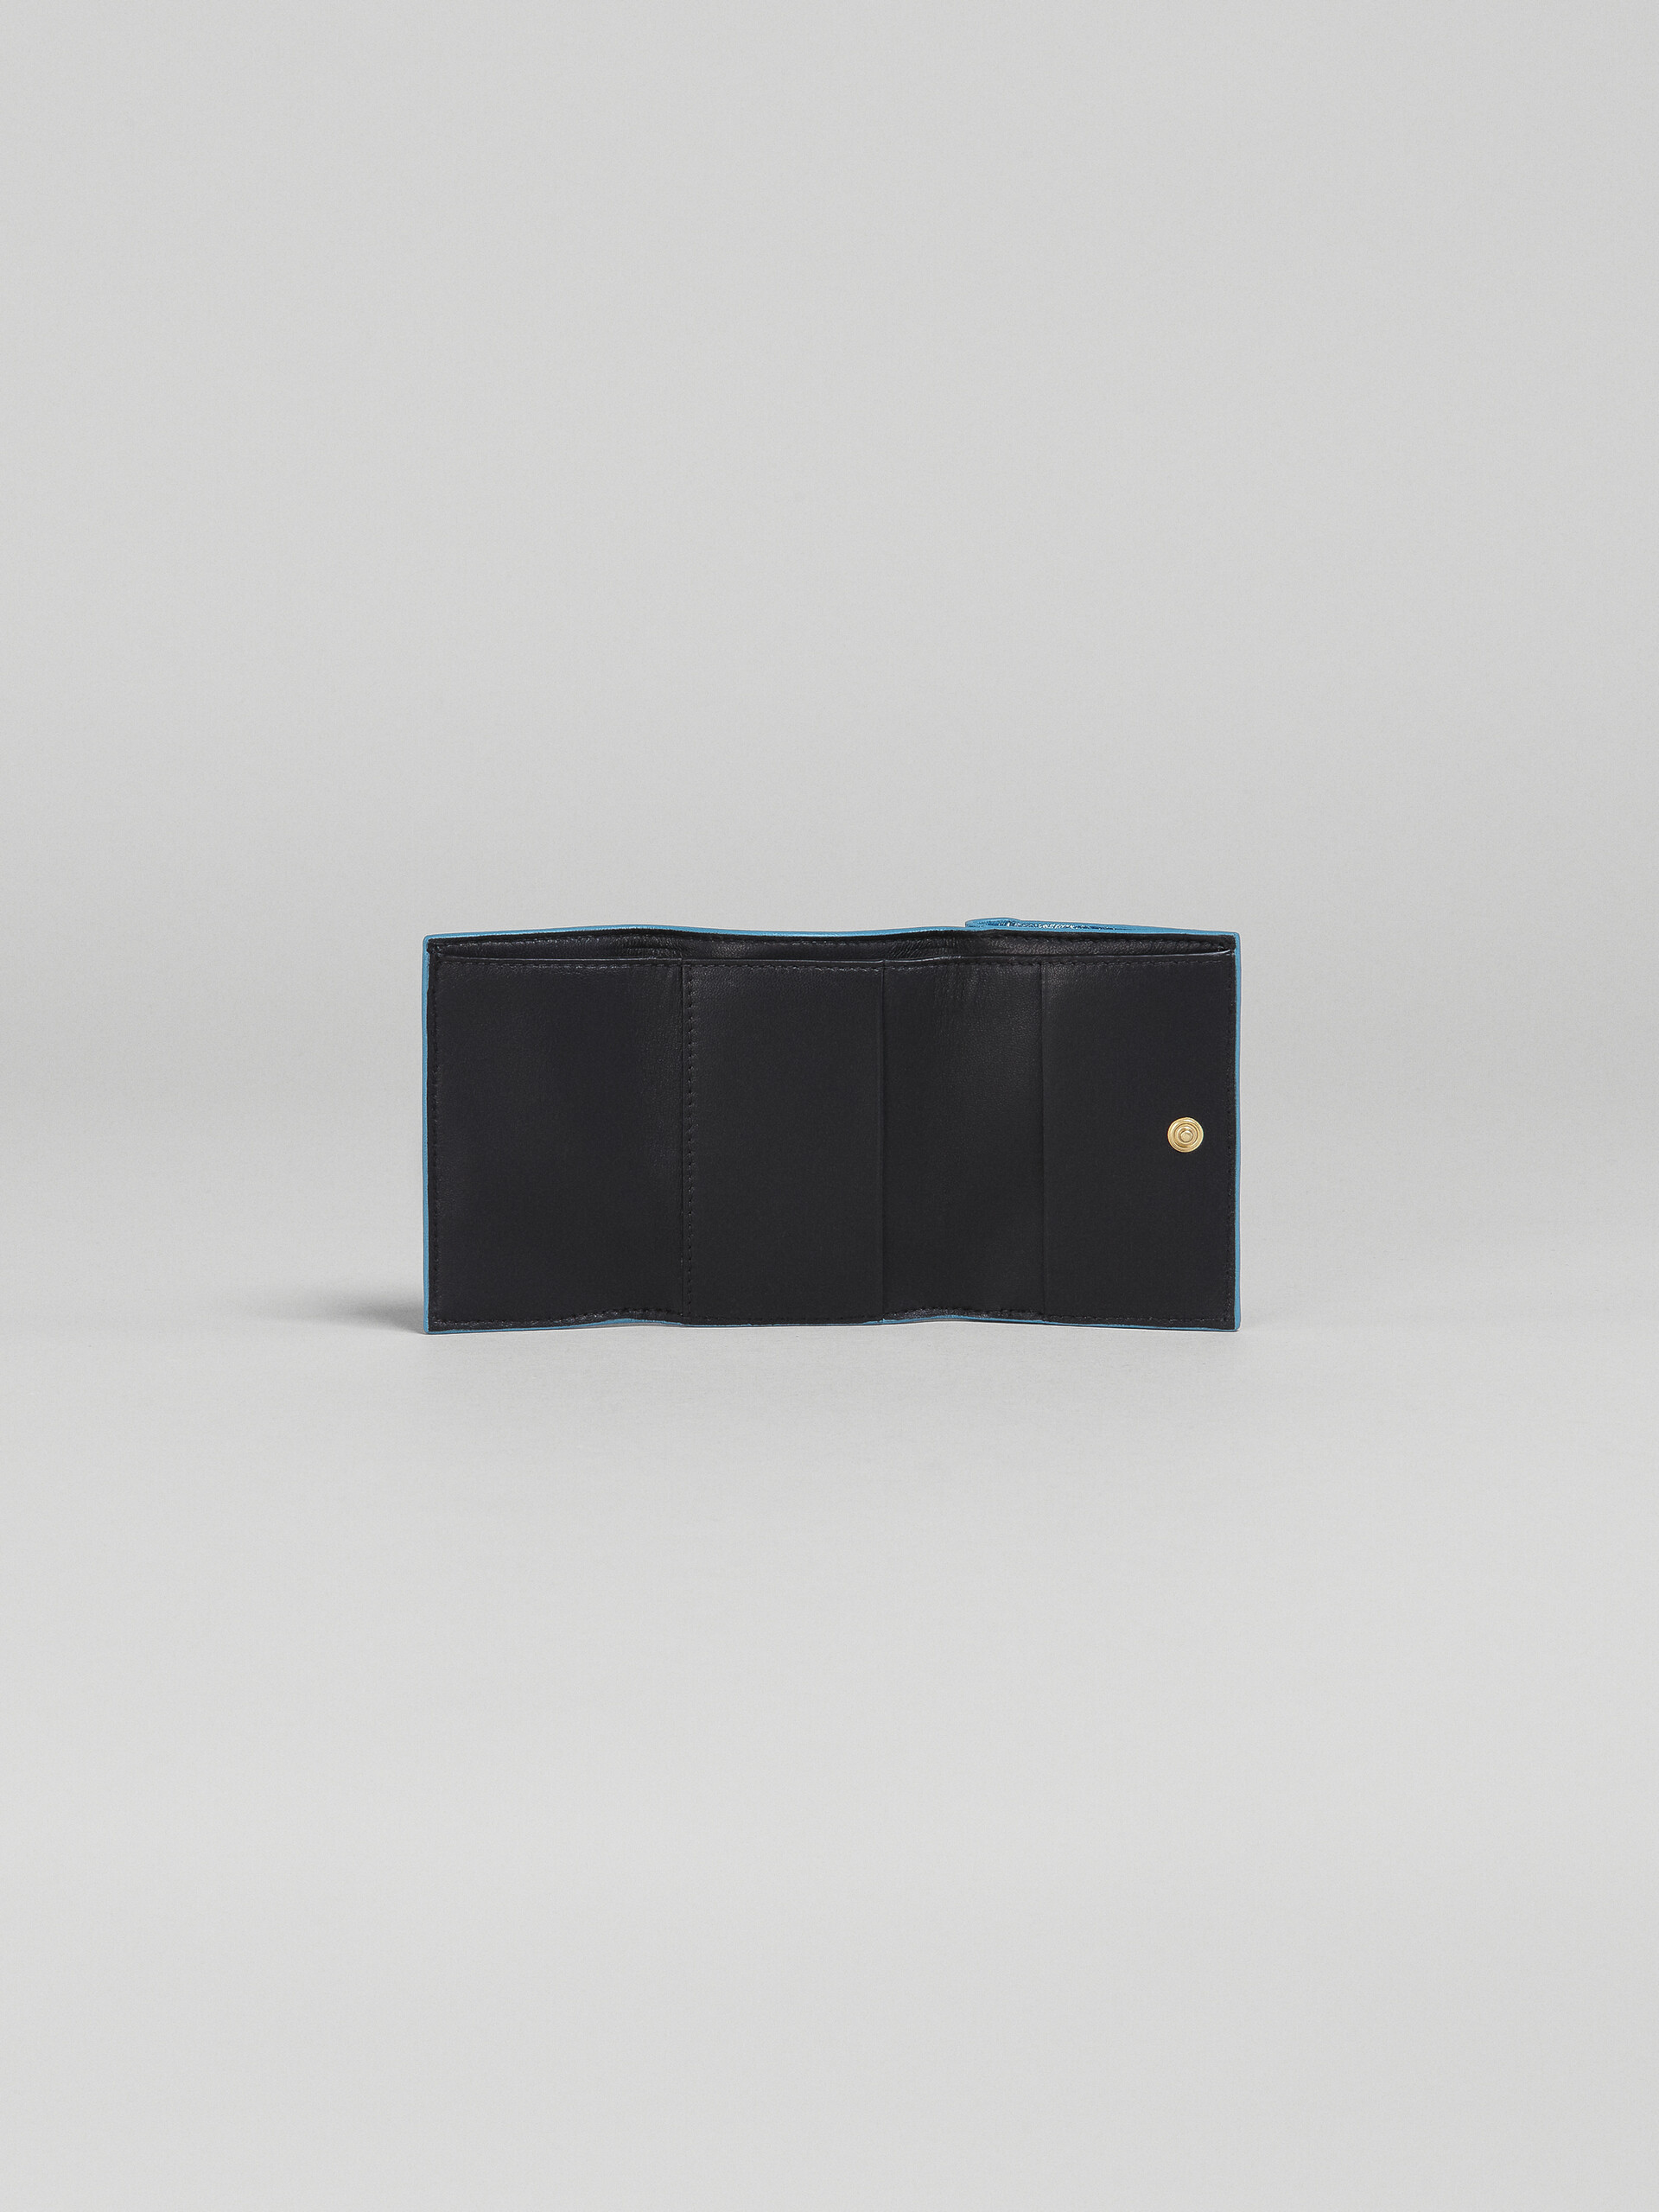 ブルーメタリック調 ナッパレザー三つ折りウォレット - 財布 - Image 2